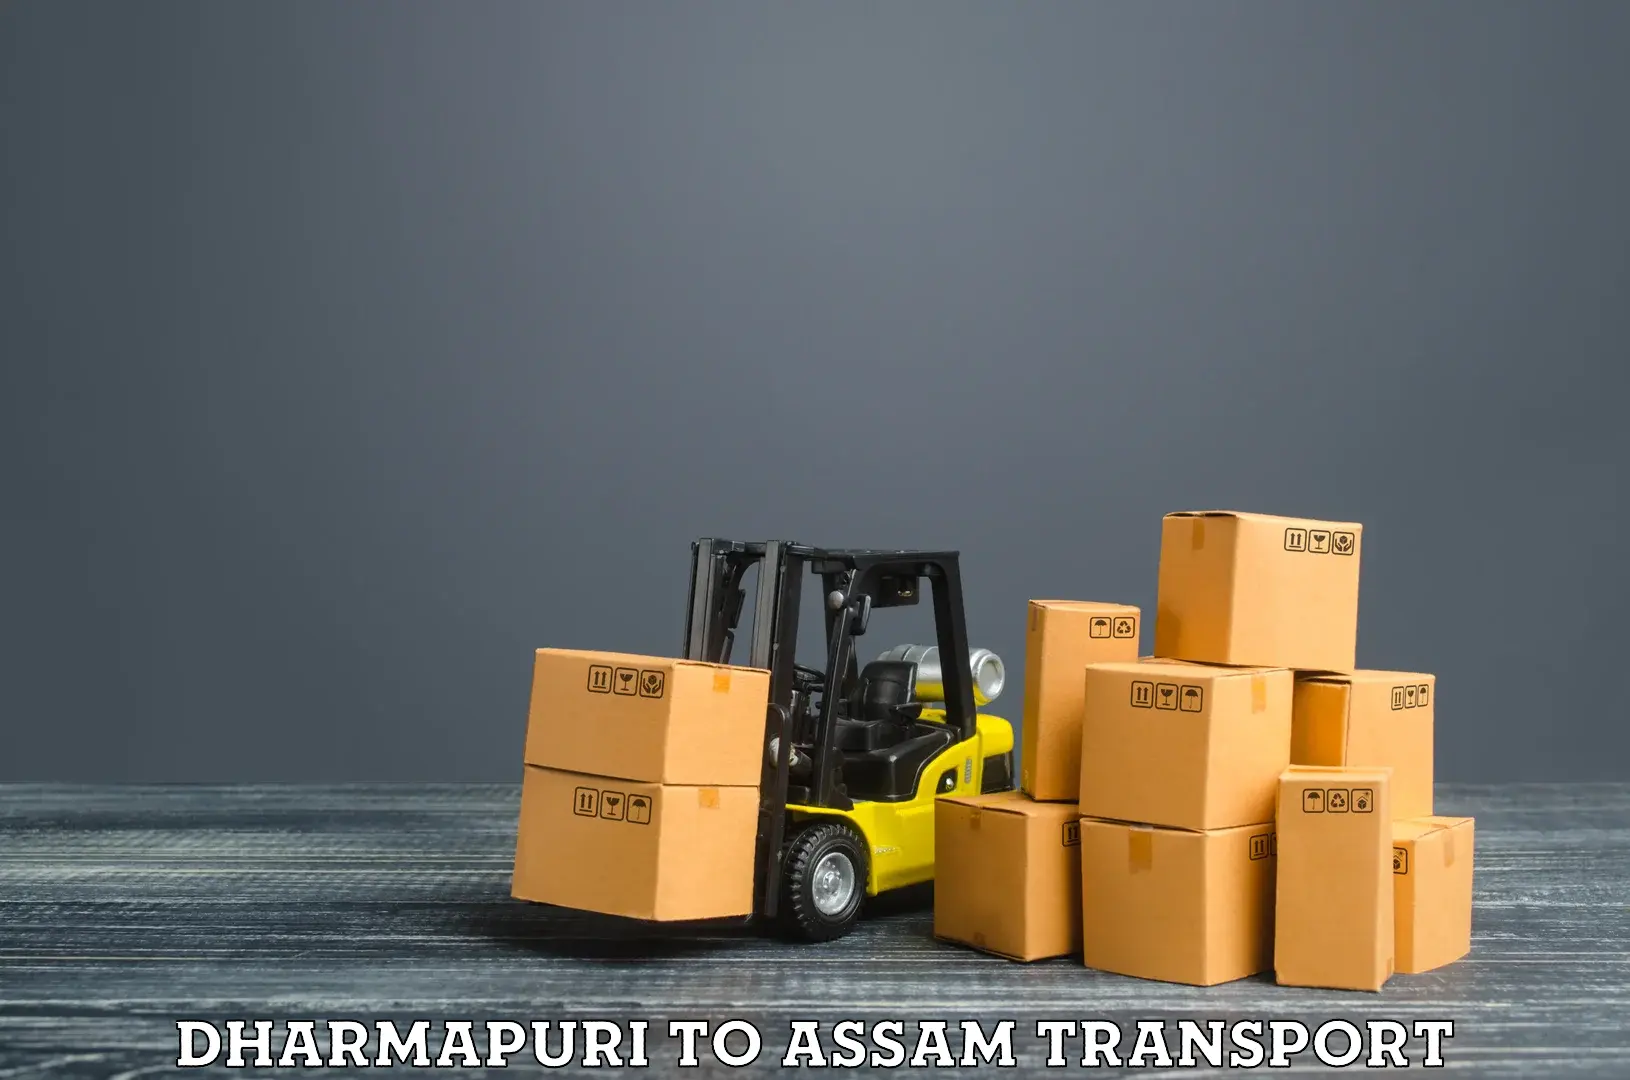 Furniture transport service Dharmapuri to Jagiroad